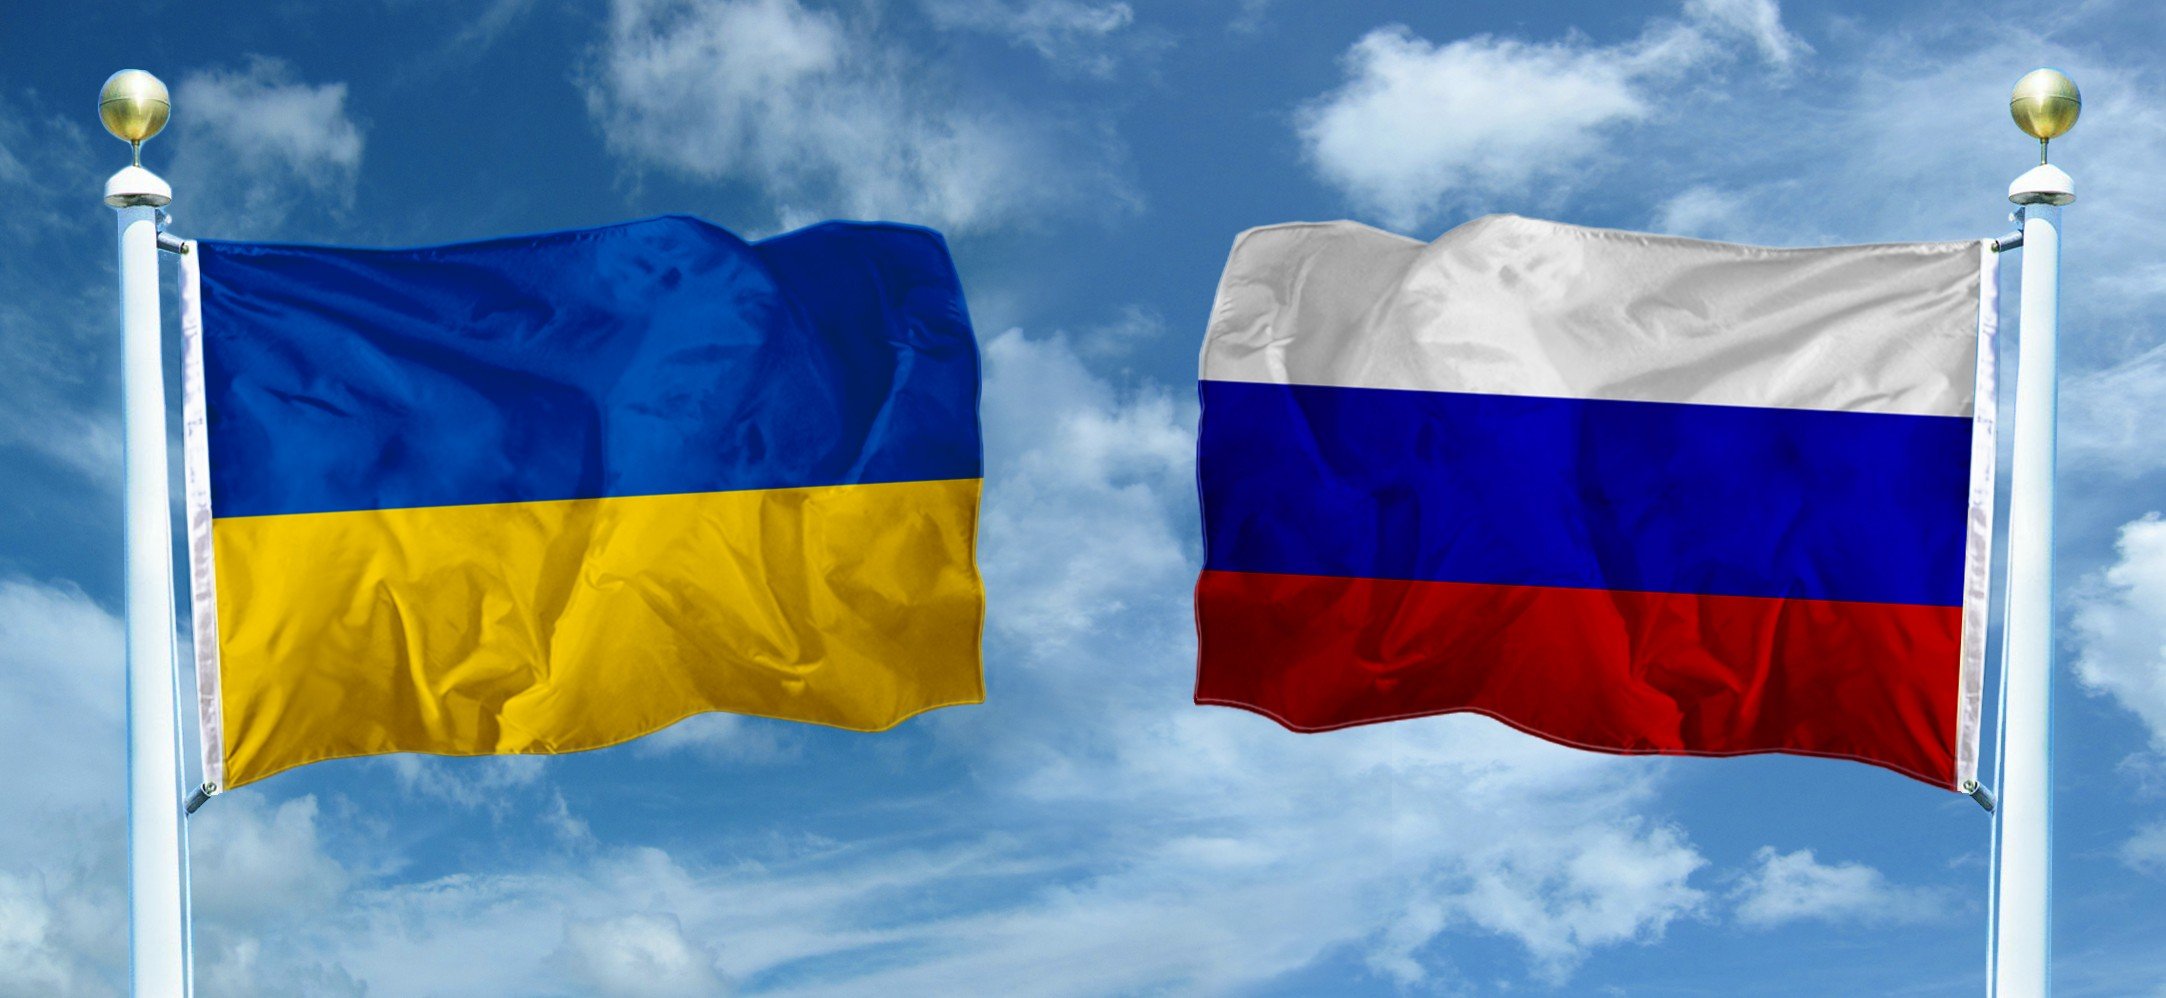 Сегодня начало новых расширенных санкций Украины против РФ